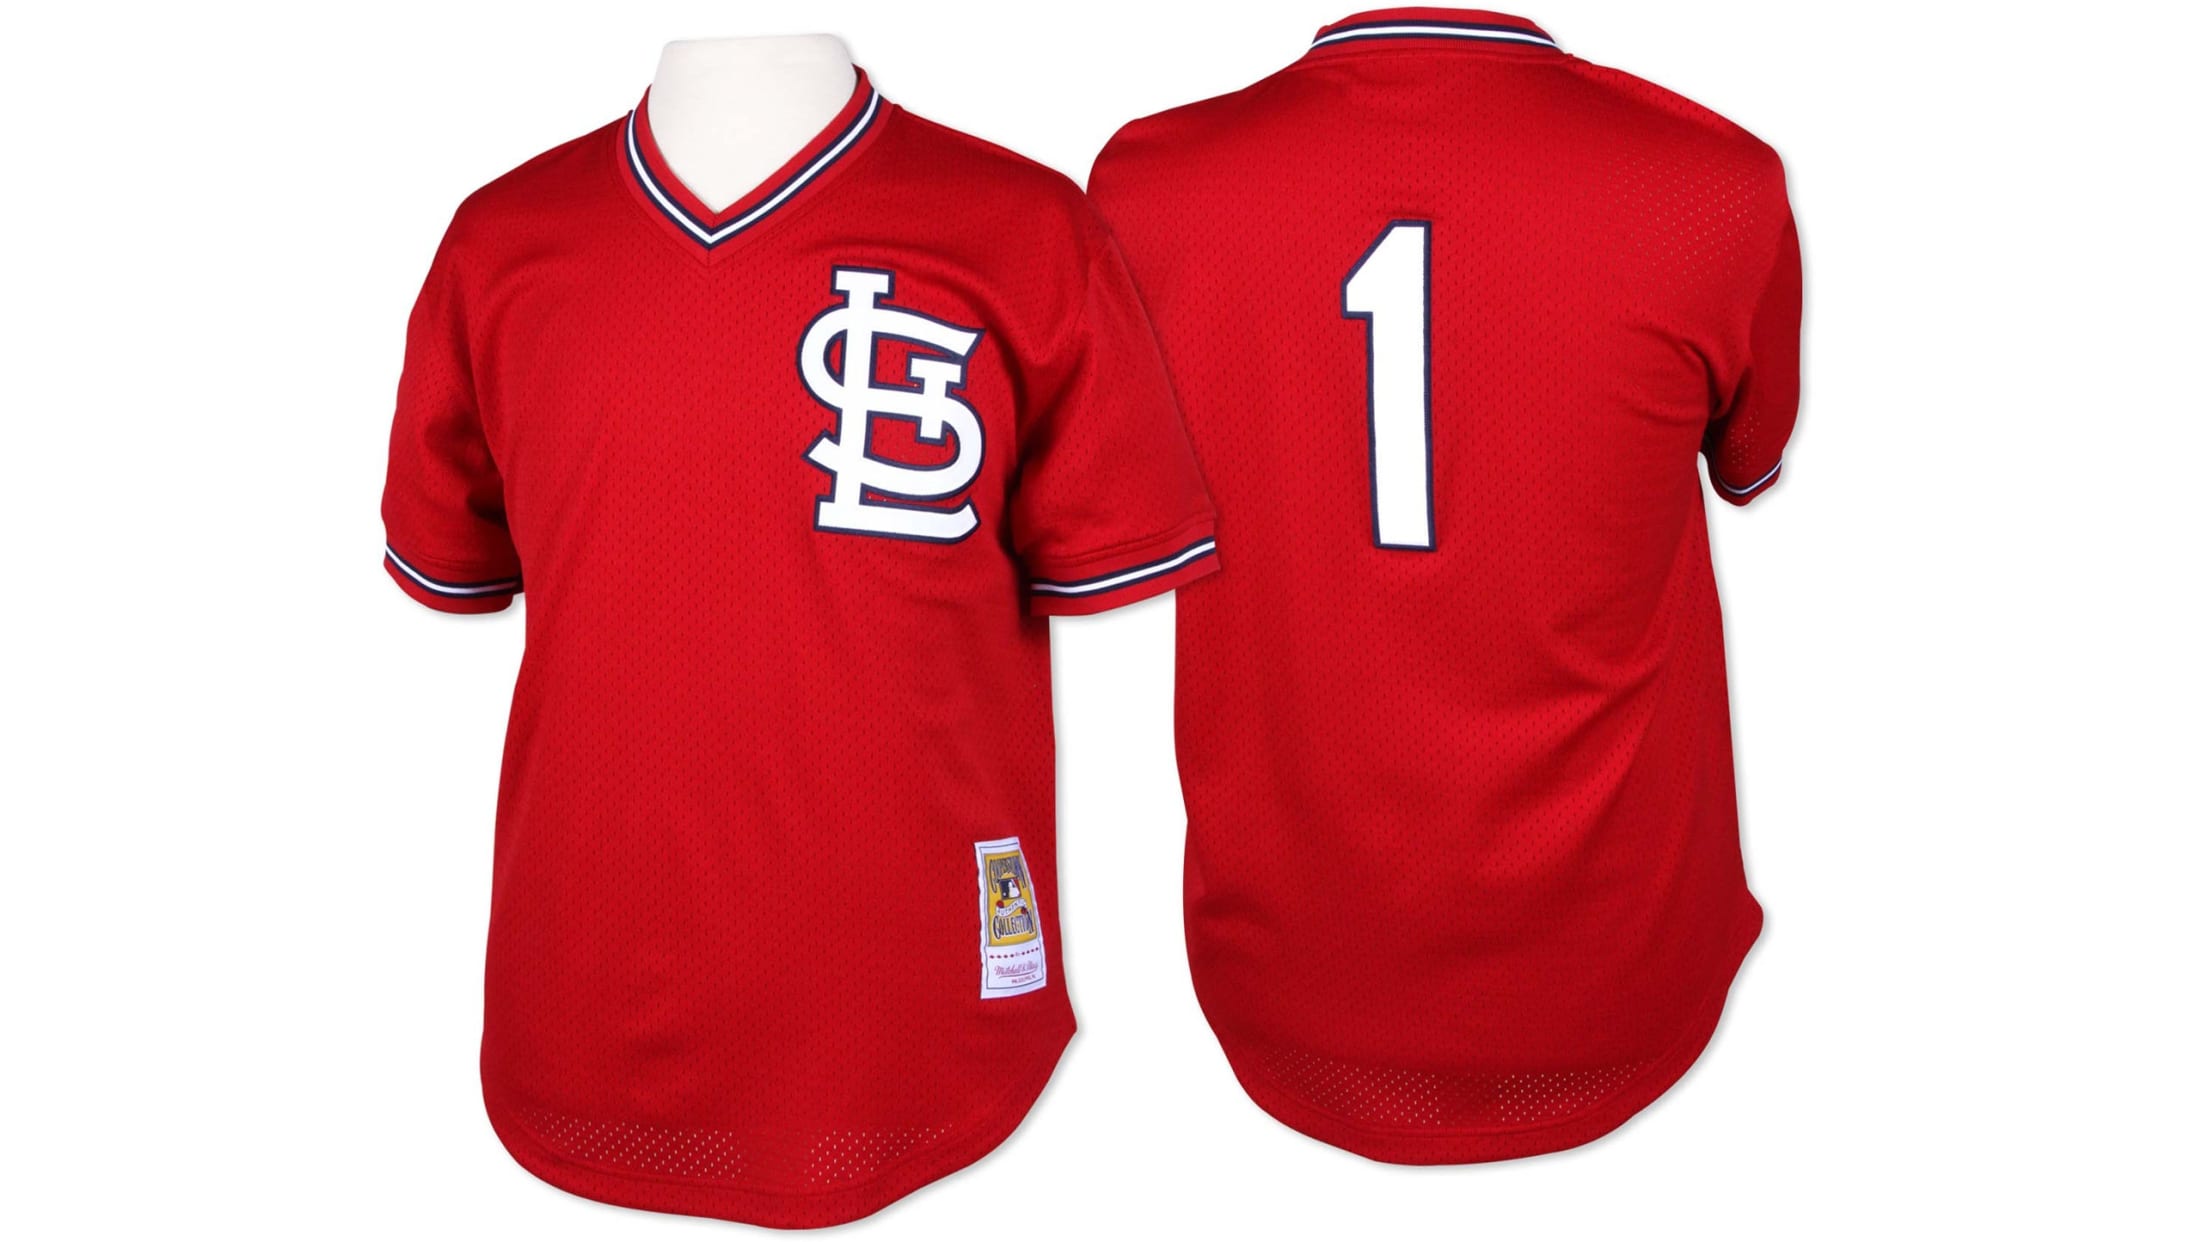 cardinals bp jersey